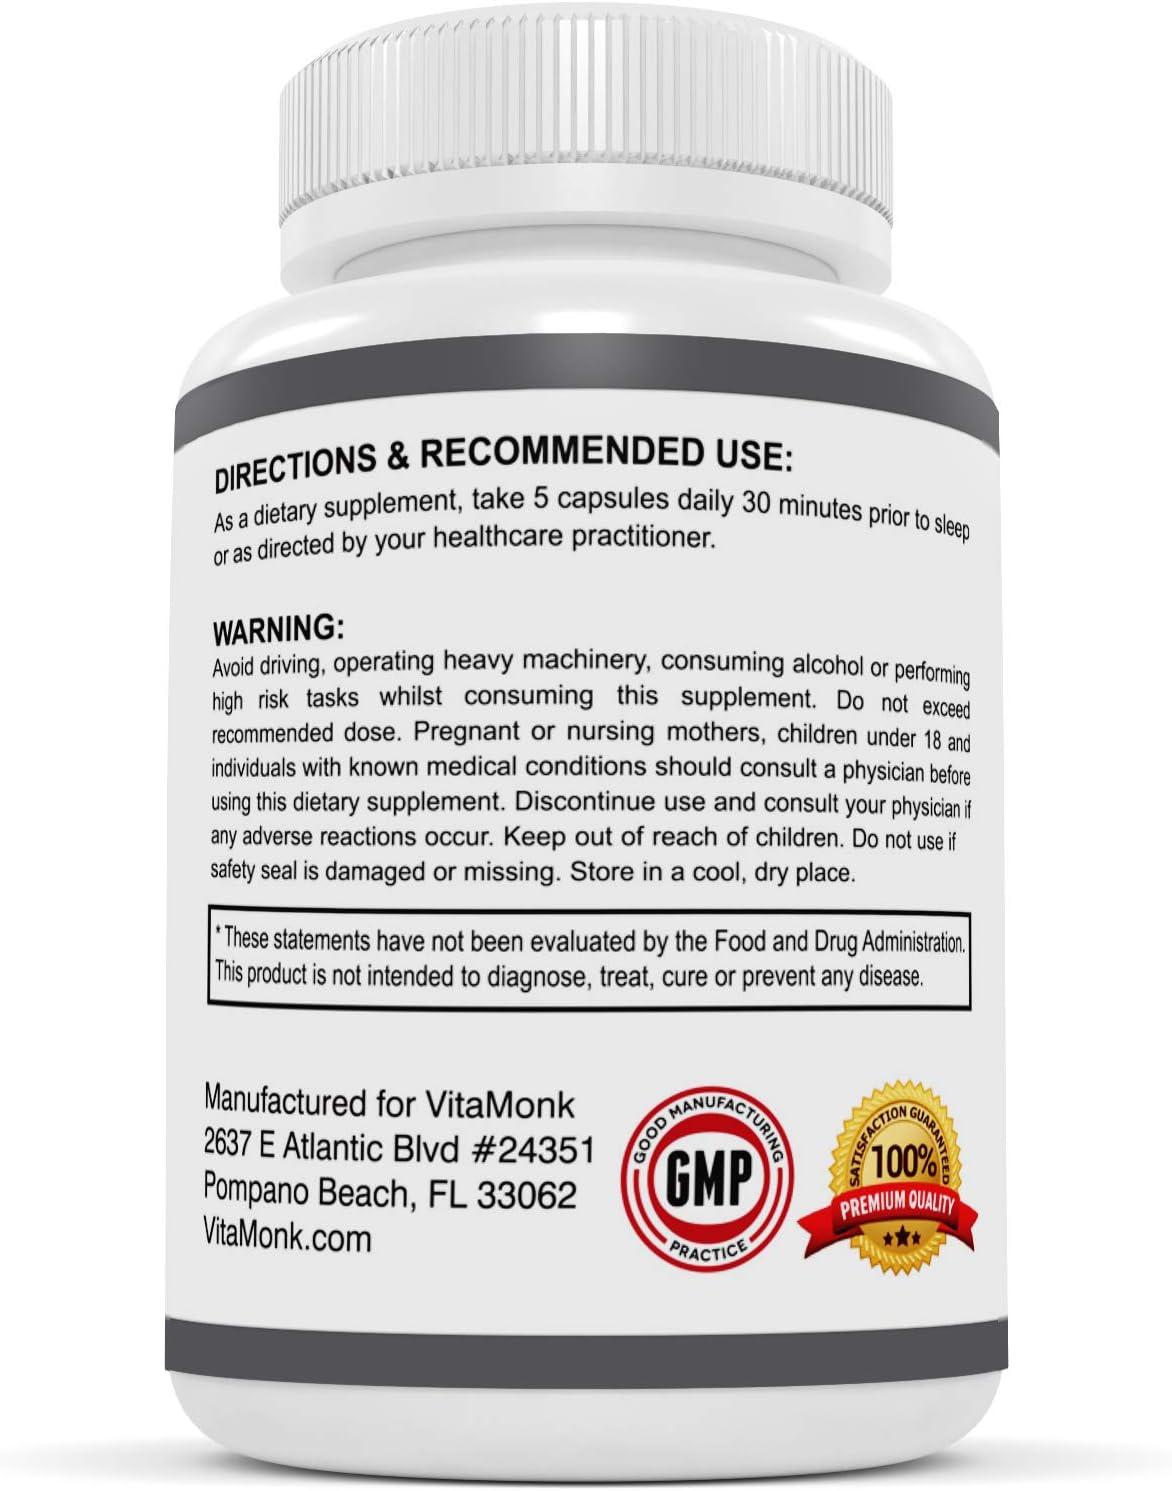 VitaMonk Relaxeril™ Relajante muscular totalmente natural - Suplemento  relajante muscular - Fórmula completa relajante muscular